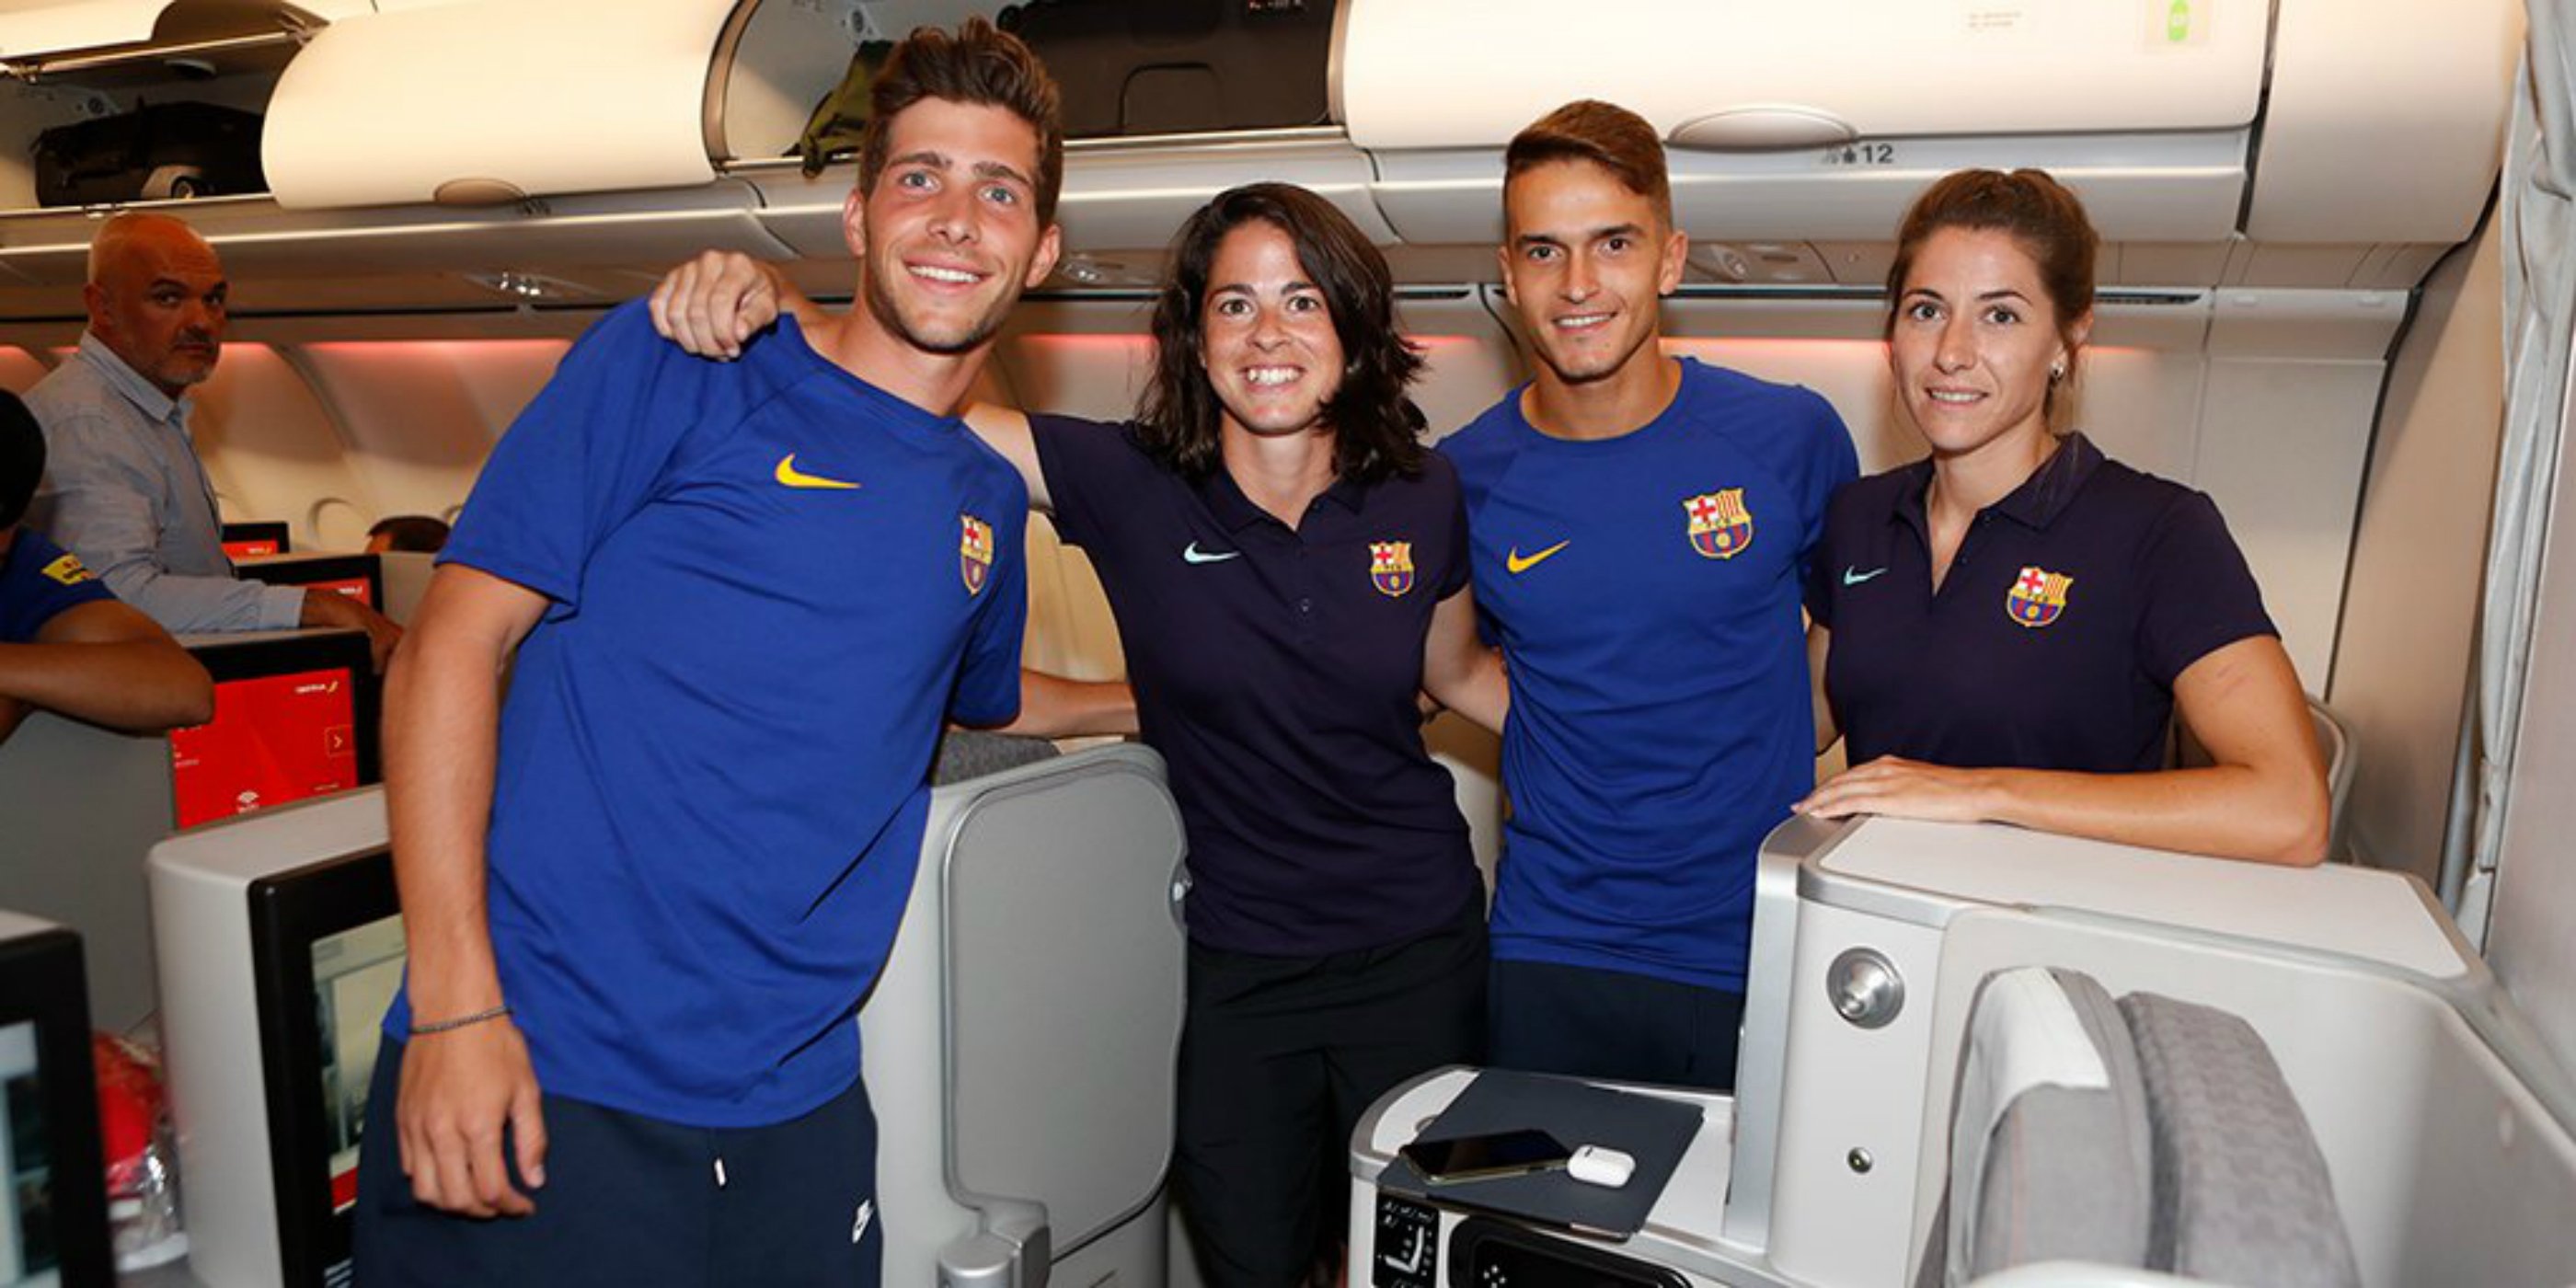 El Barça fa viatjar les jugadores en turista per prioritzar el descans dels jugadors